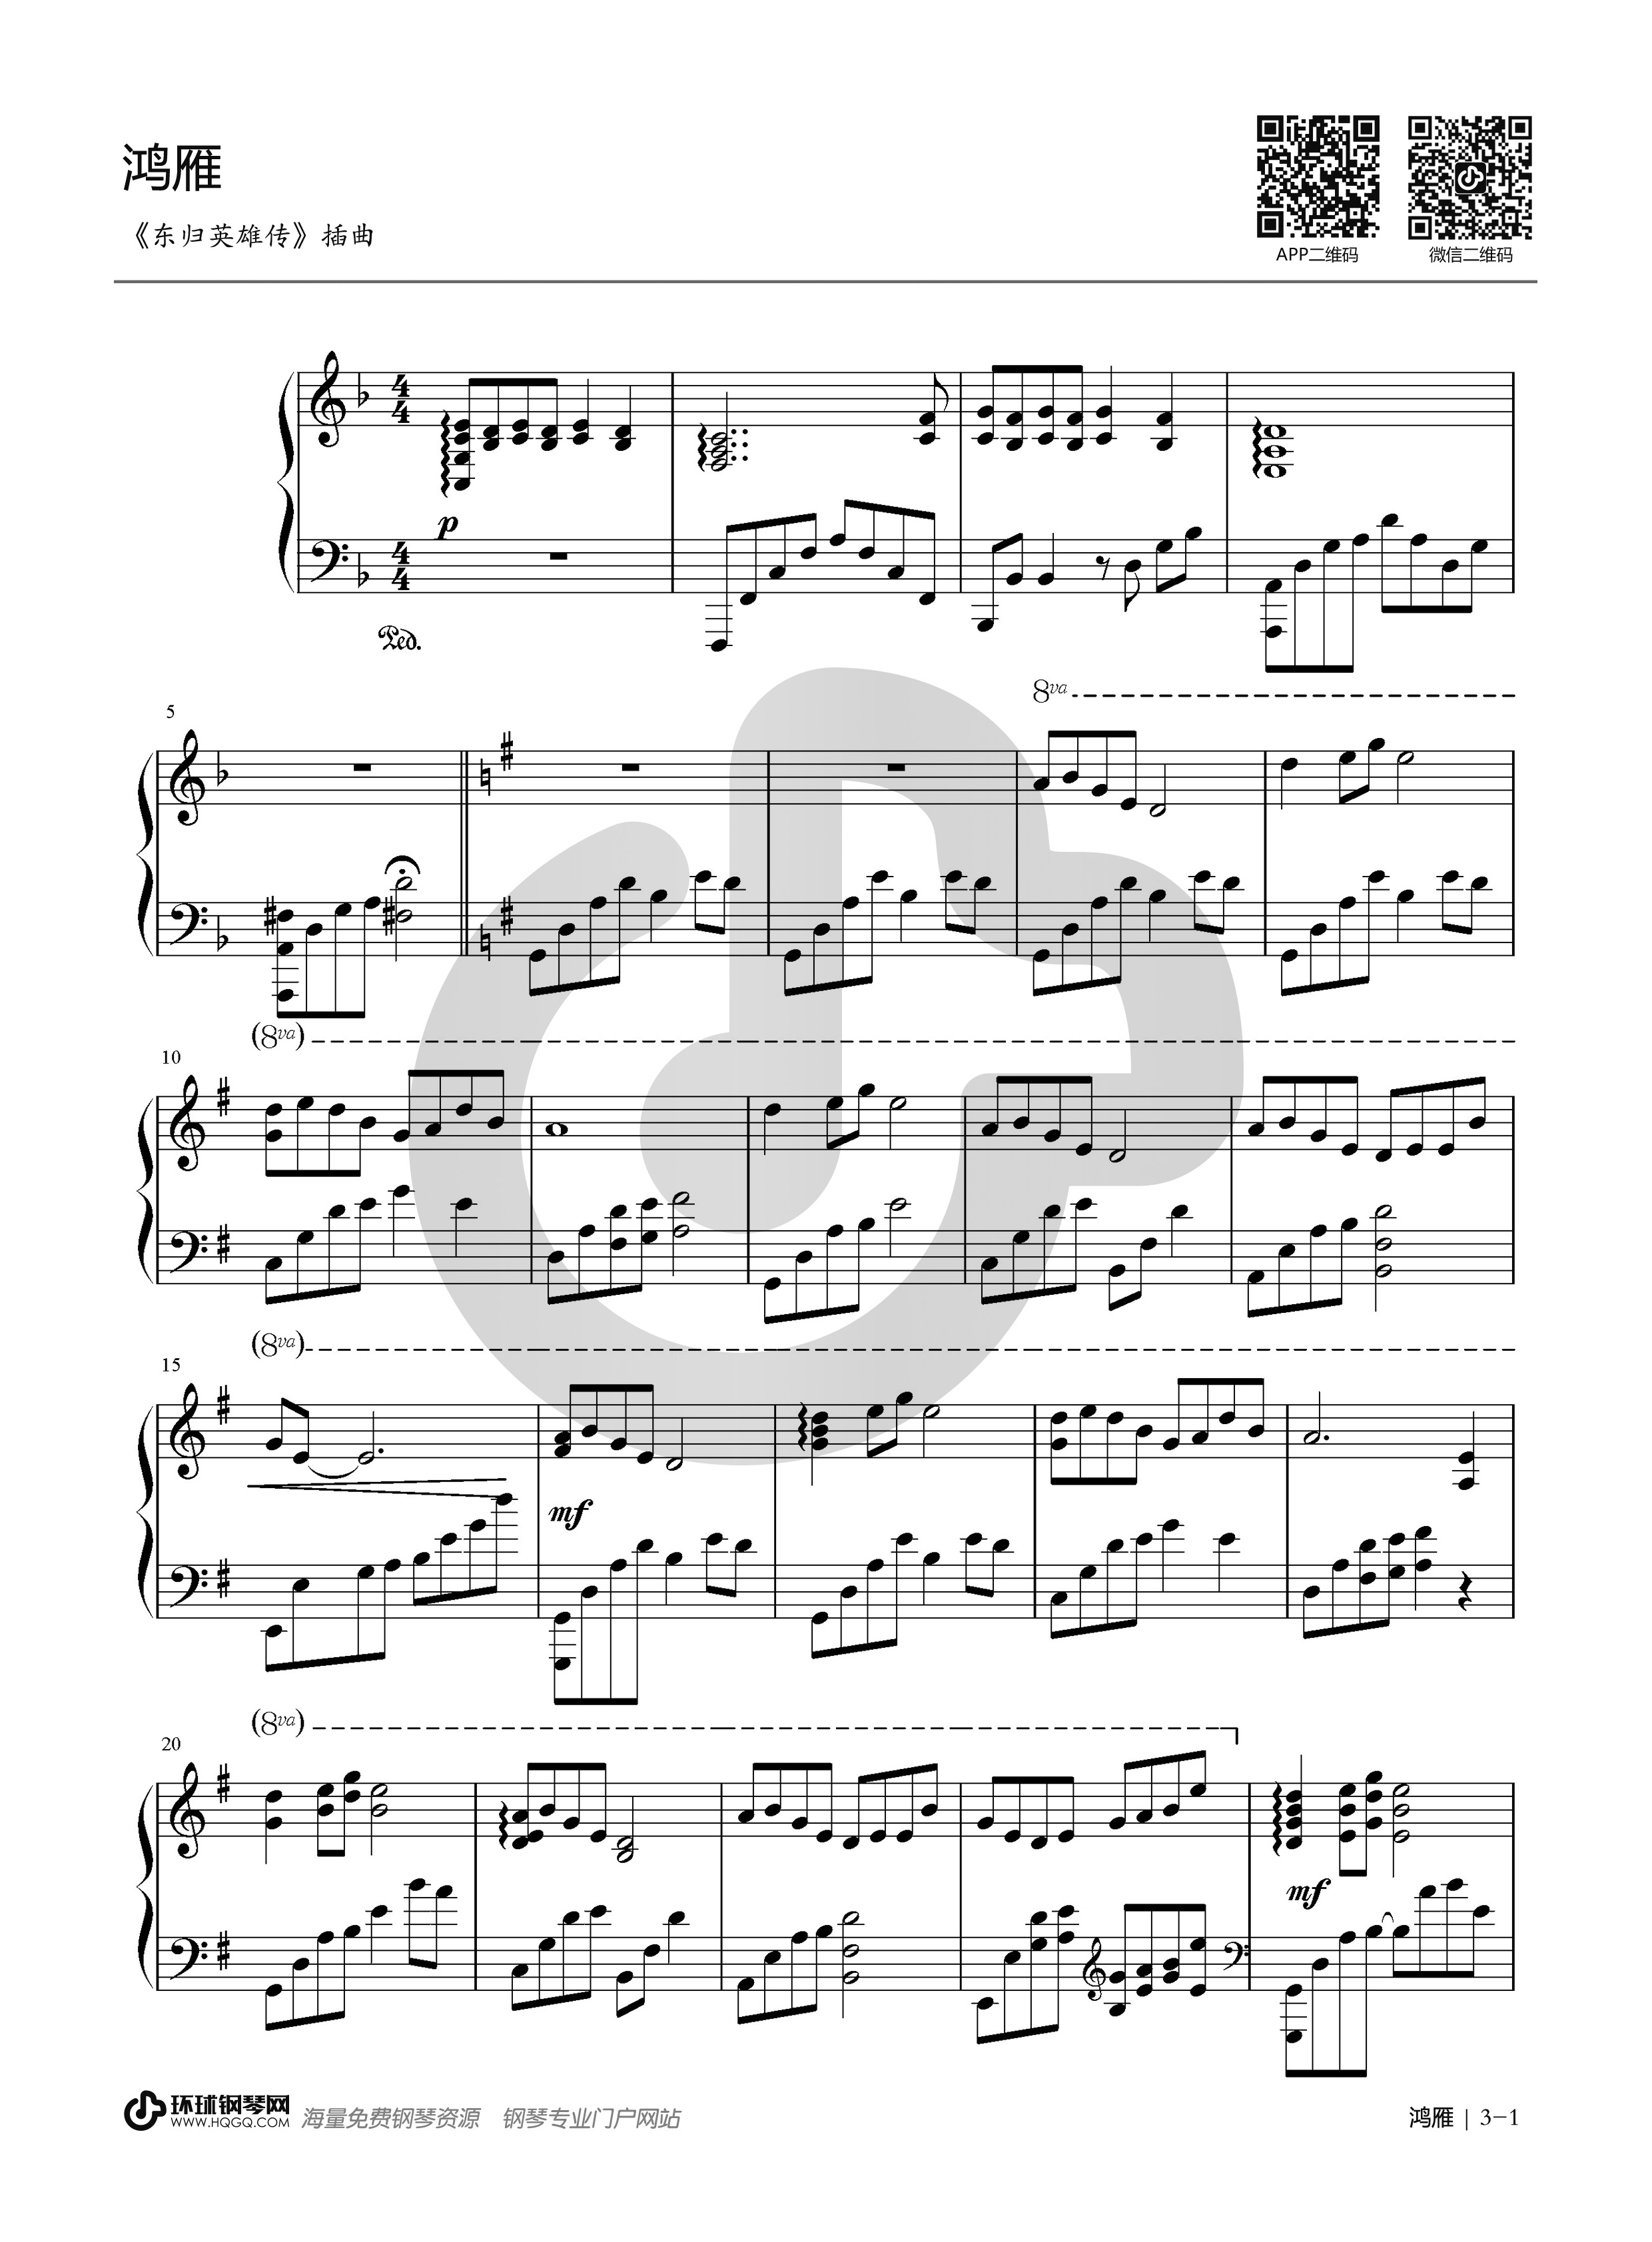 鸿雁小提琴五线谱曲子图片